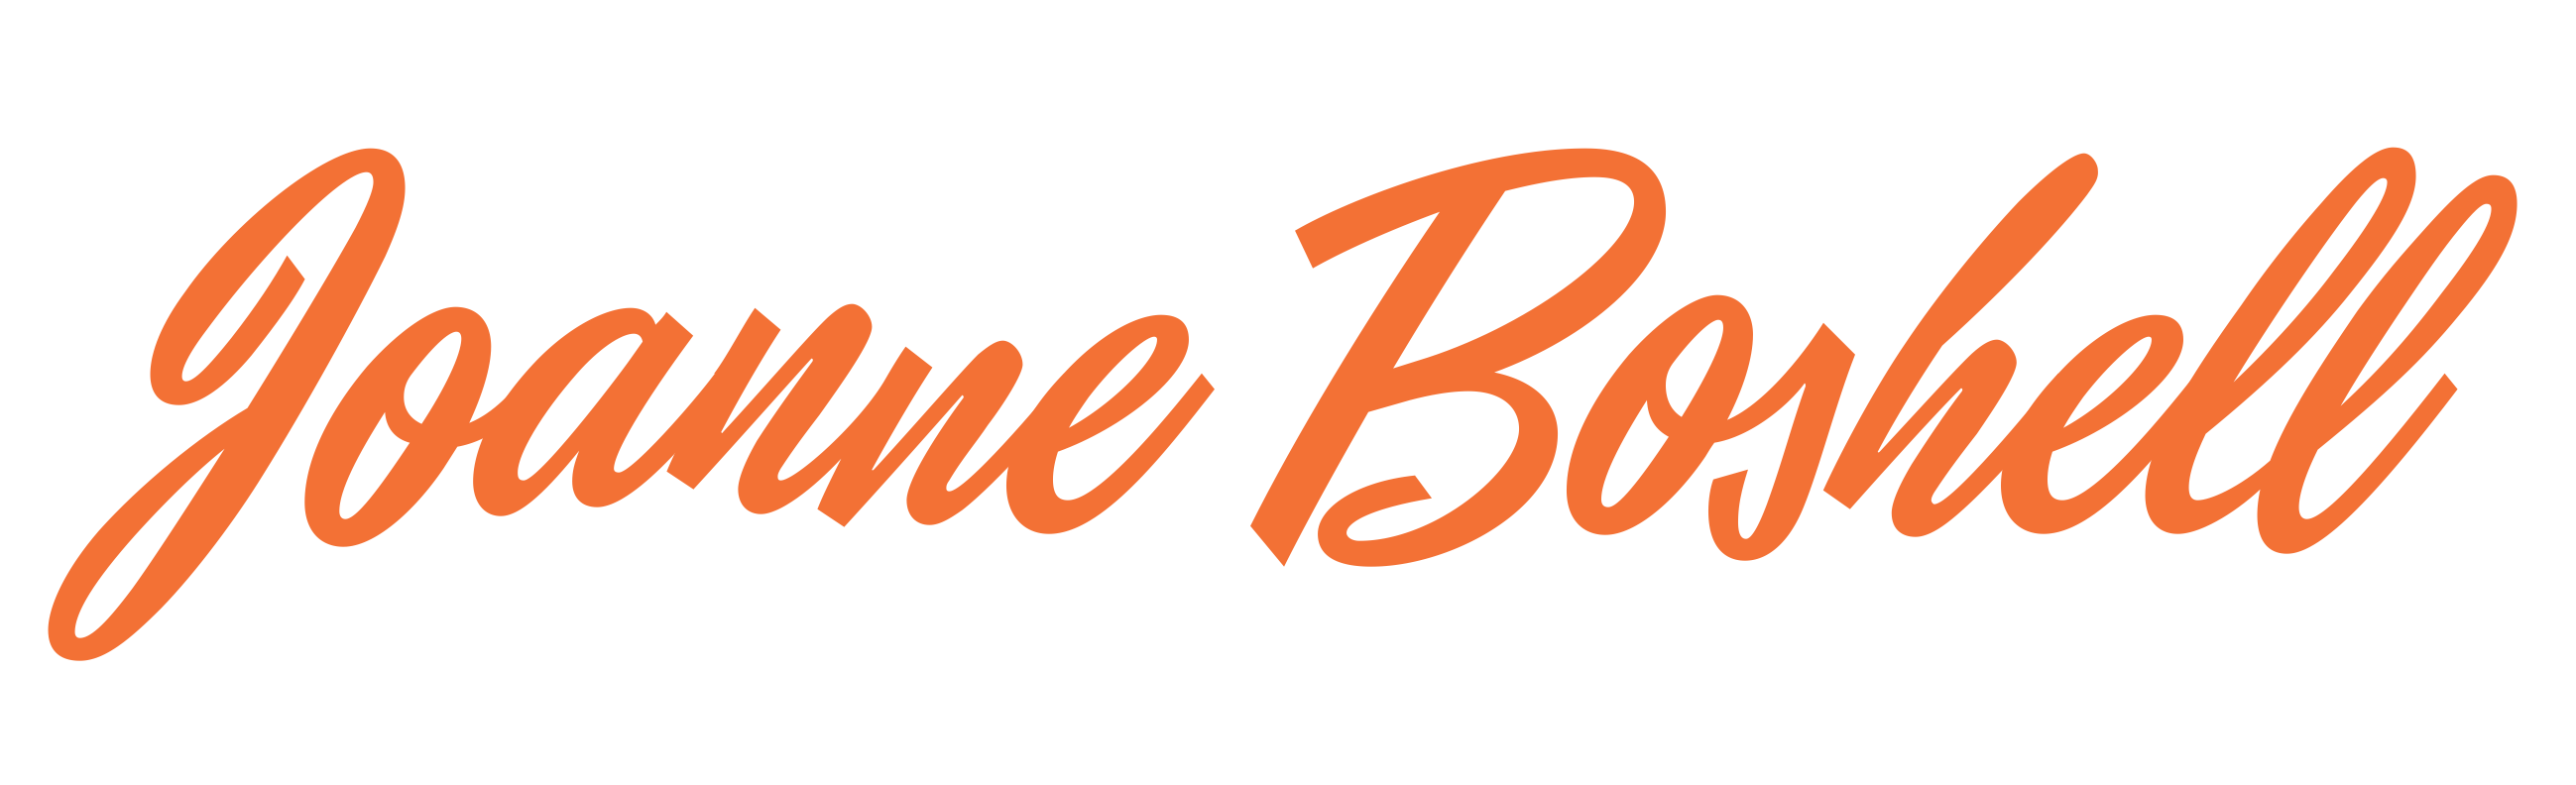 Joanne Boshell Logo